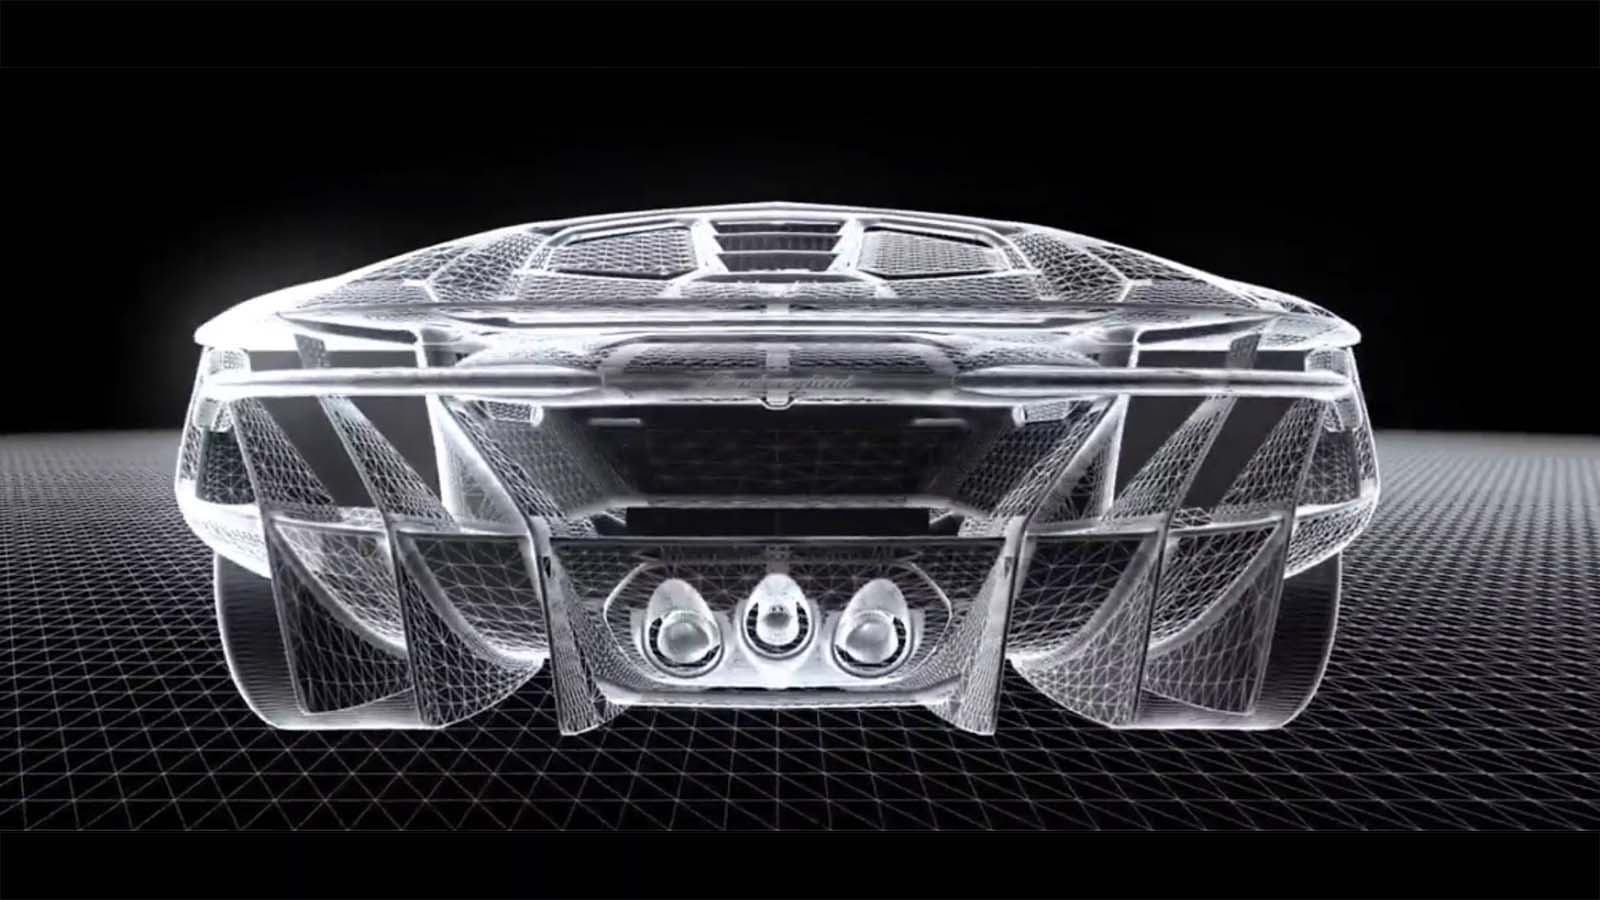 Berita, lamborghini centenario rear view: Apakah Ini Wujud Asli Lamborghini Centenario?